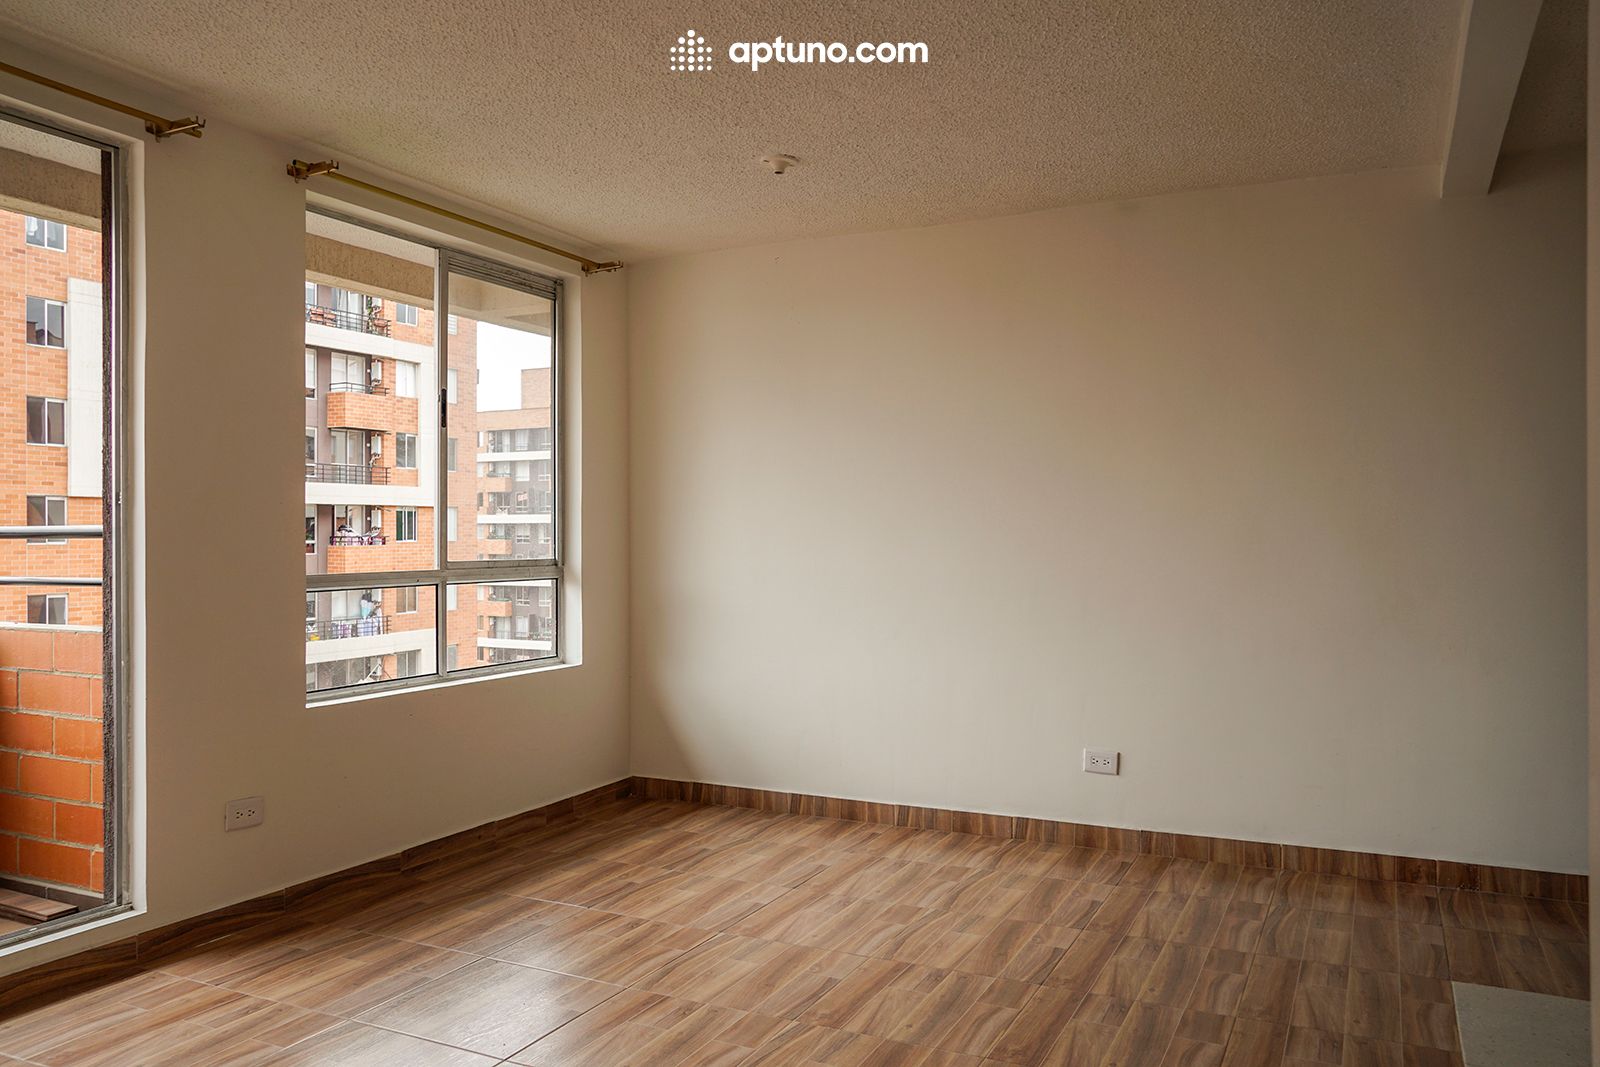 Apartamento en arriendo Mosquera 56 m² - $ 1.150.000,00